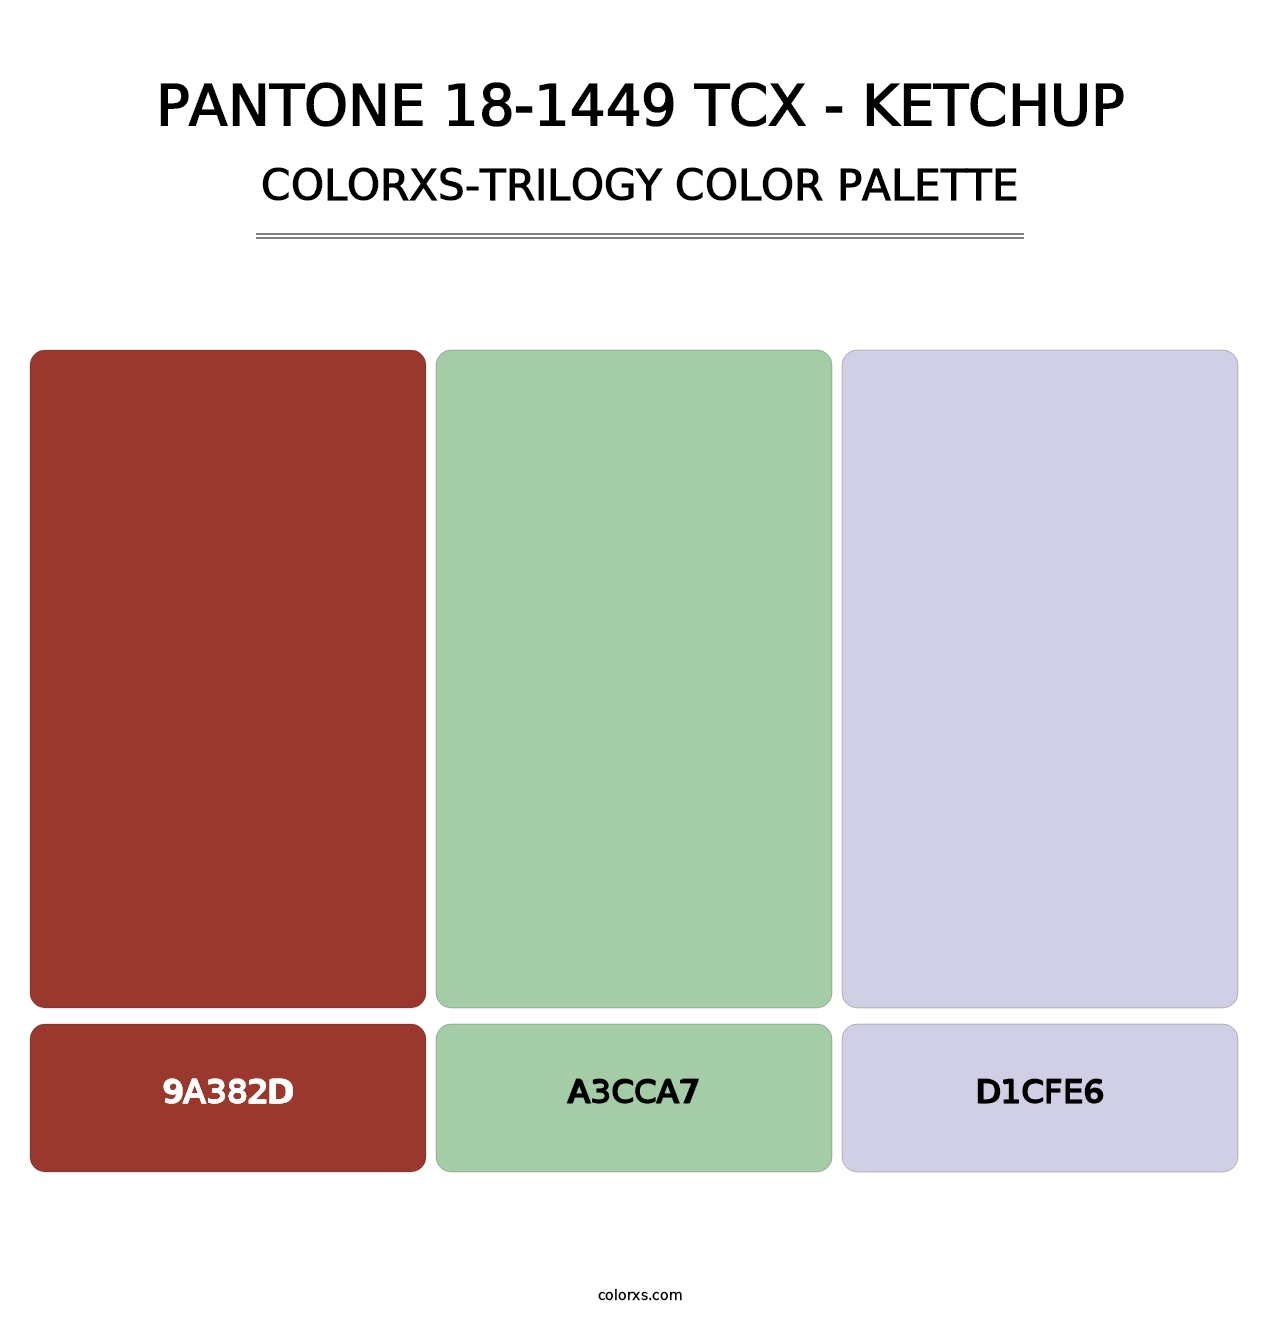 PANTONE 18-1449 TCX - Ketchup - Colorxs Trilogy Palette